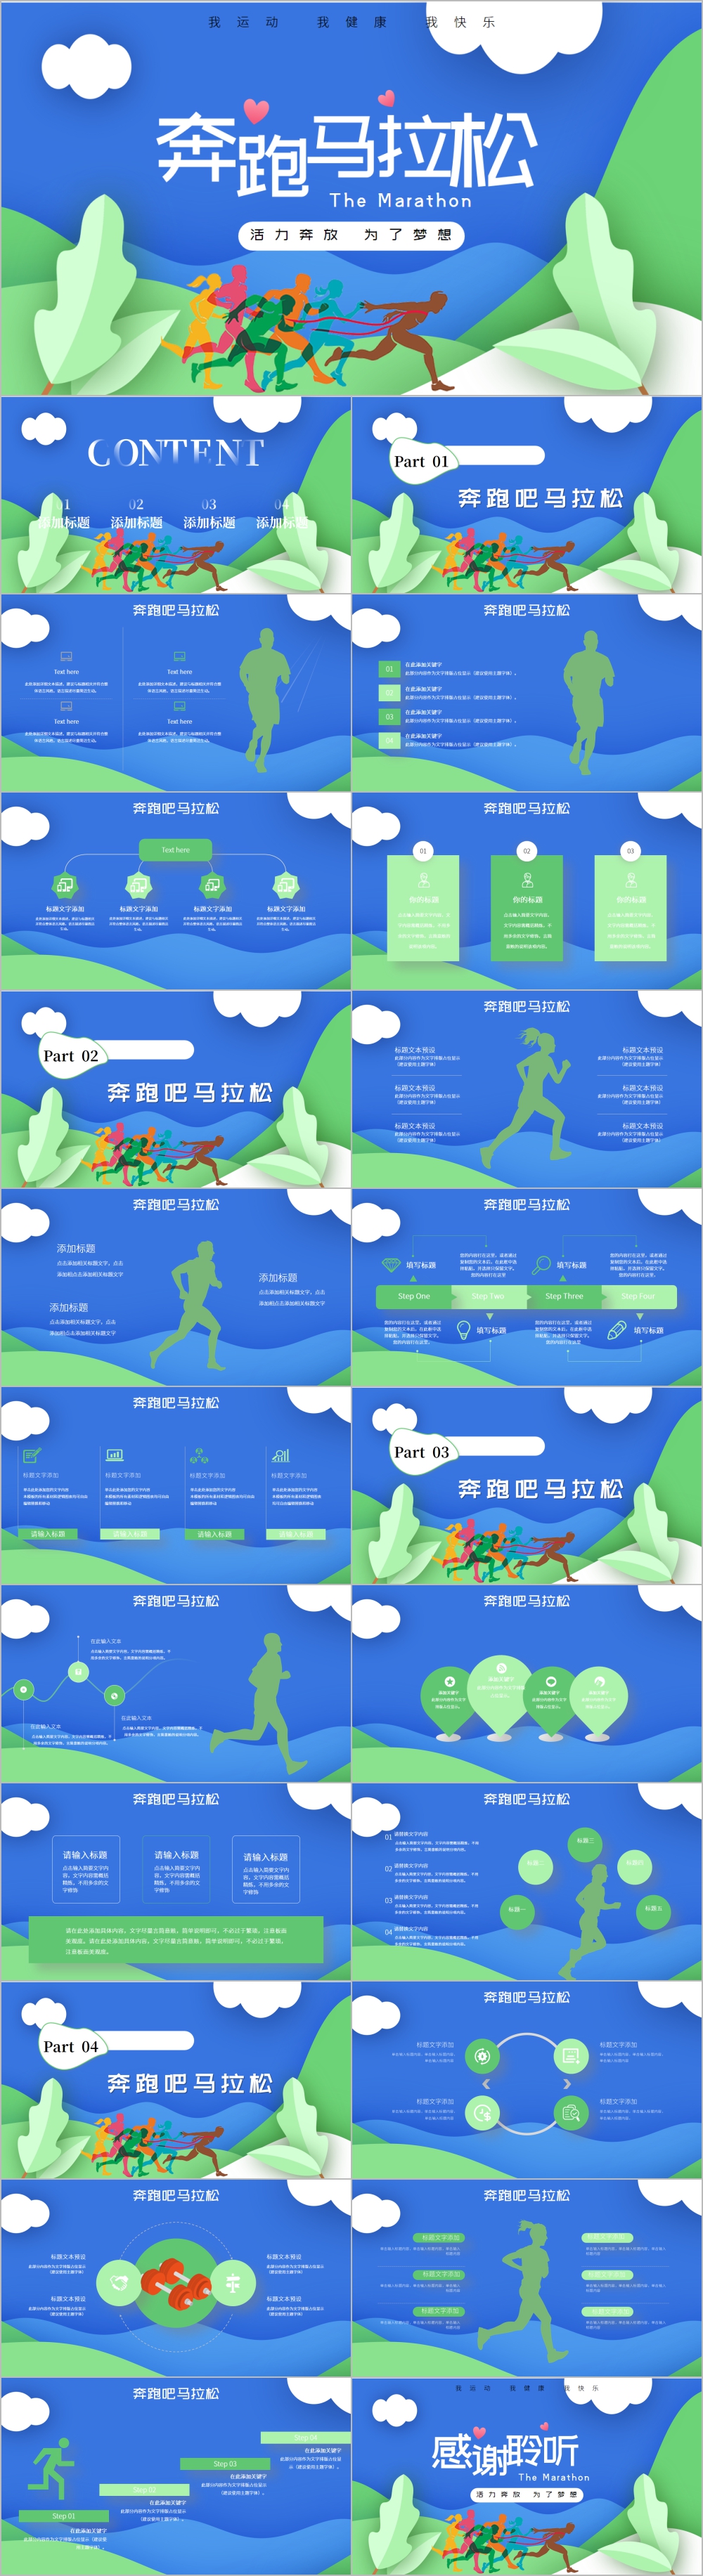 全民健身健康中国运动会跑步马拉松PPT